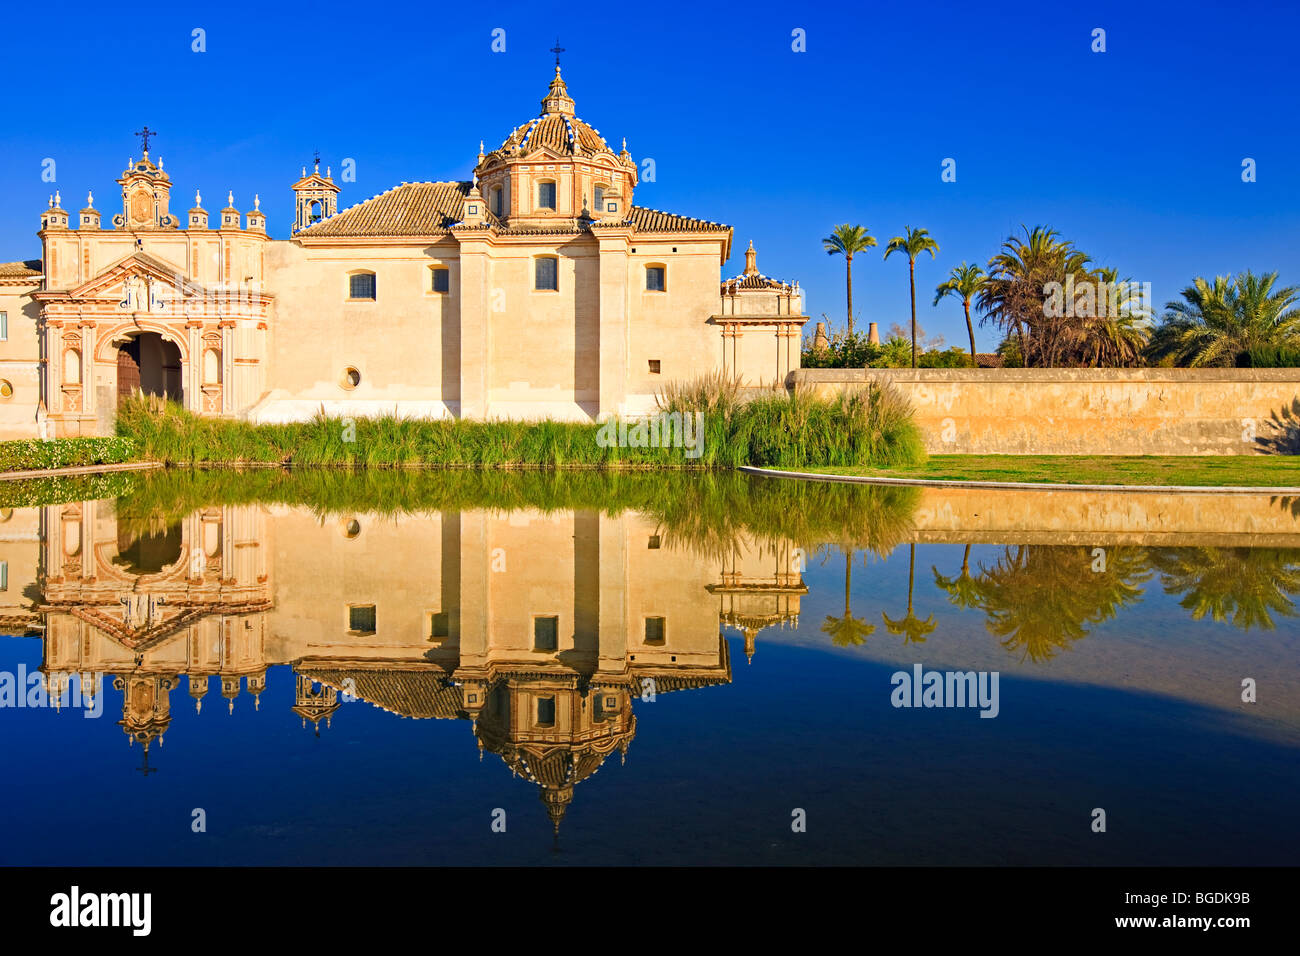 Reflections on a pond in the Jardin de la Cartuja of the Monasterio de Santa Maria de las Cuevas - La Cartuja de Seville (Monast Stock Photo